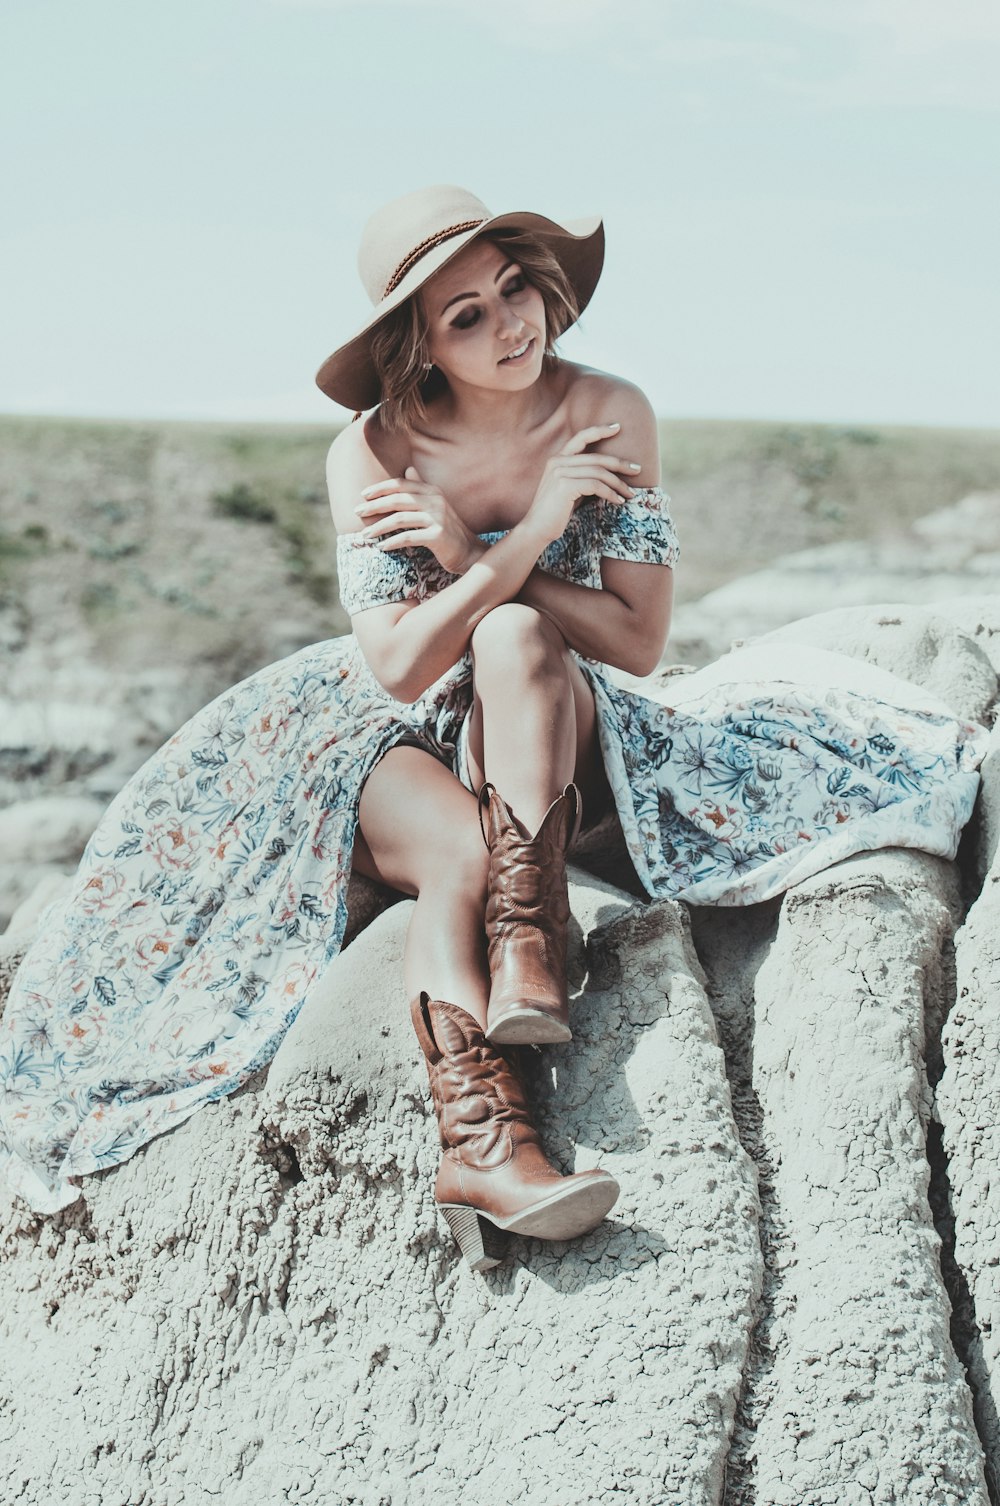 femme en robe fleurie bleue et blanche portant des bottes de cow-boy marron assise sur roche grise pendant